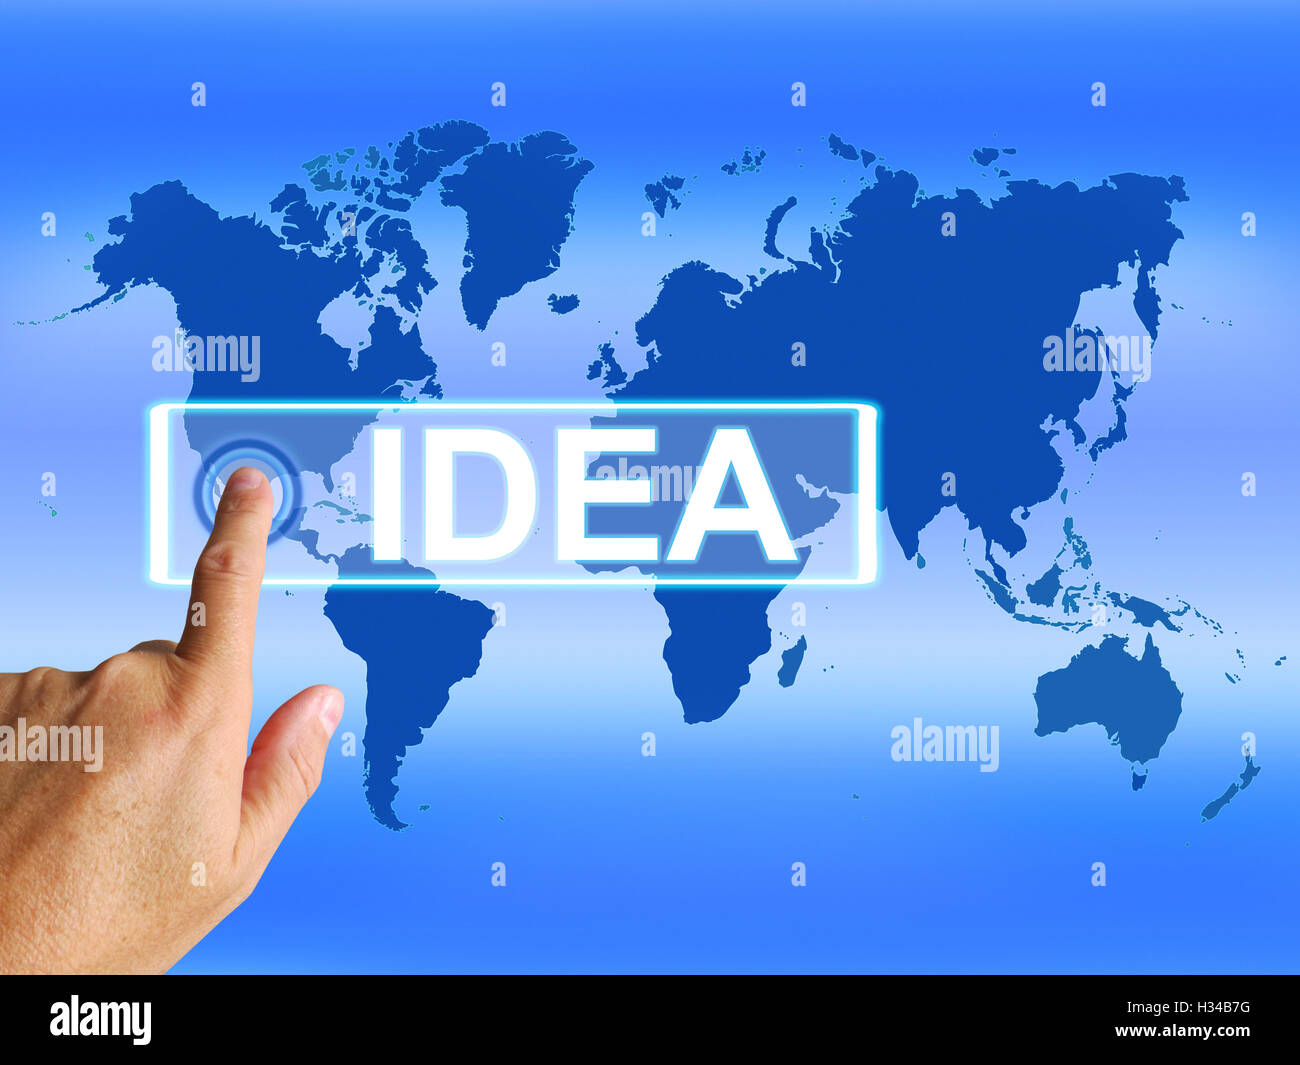 Idée Site signifie dans le monde des idées ou concepts pensées Banque D'Images